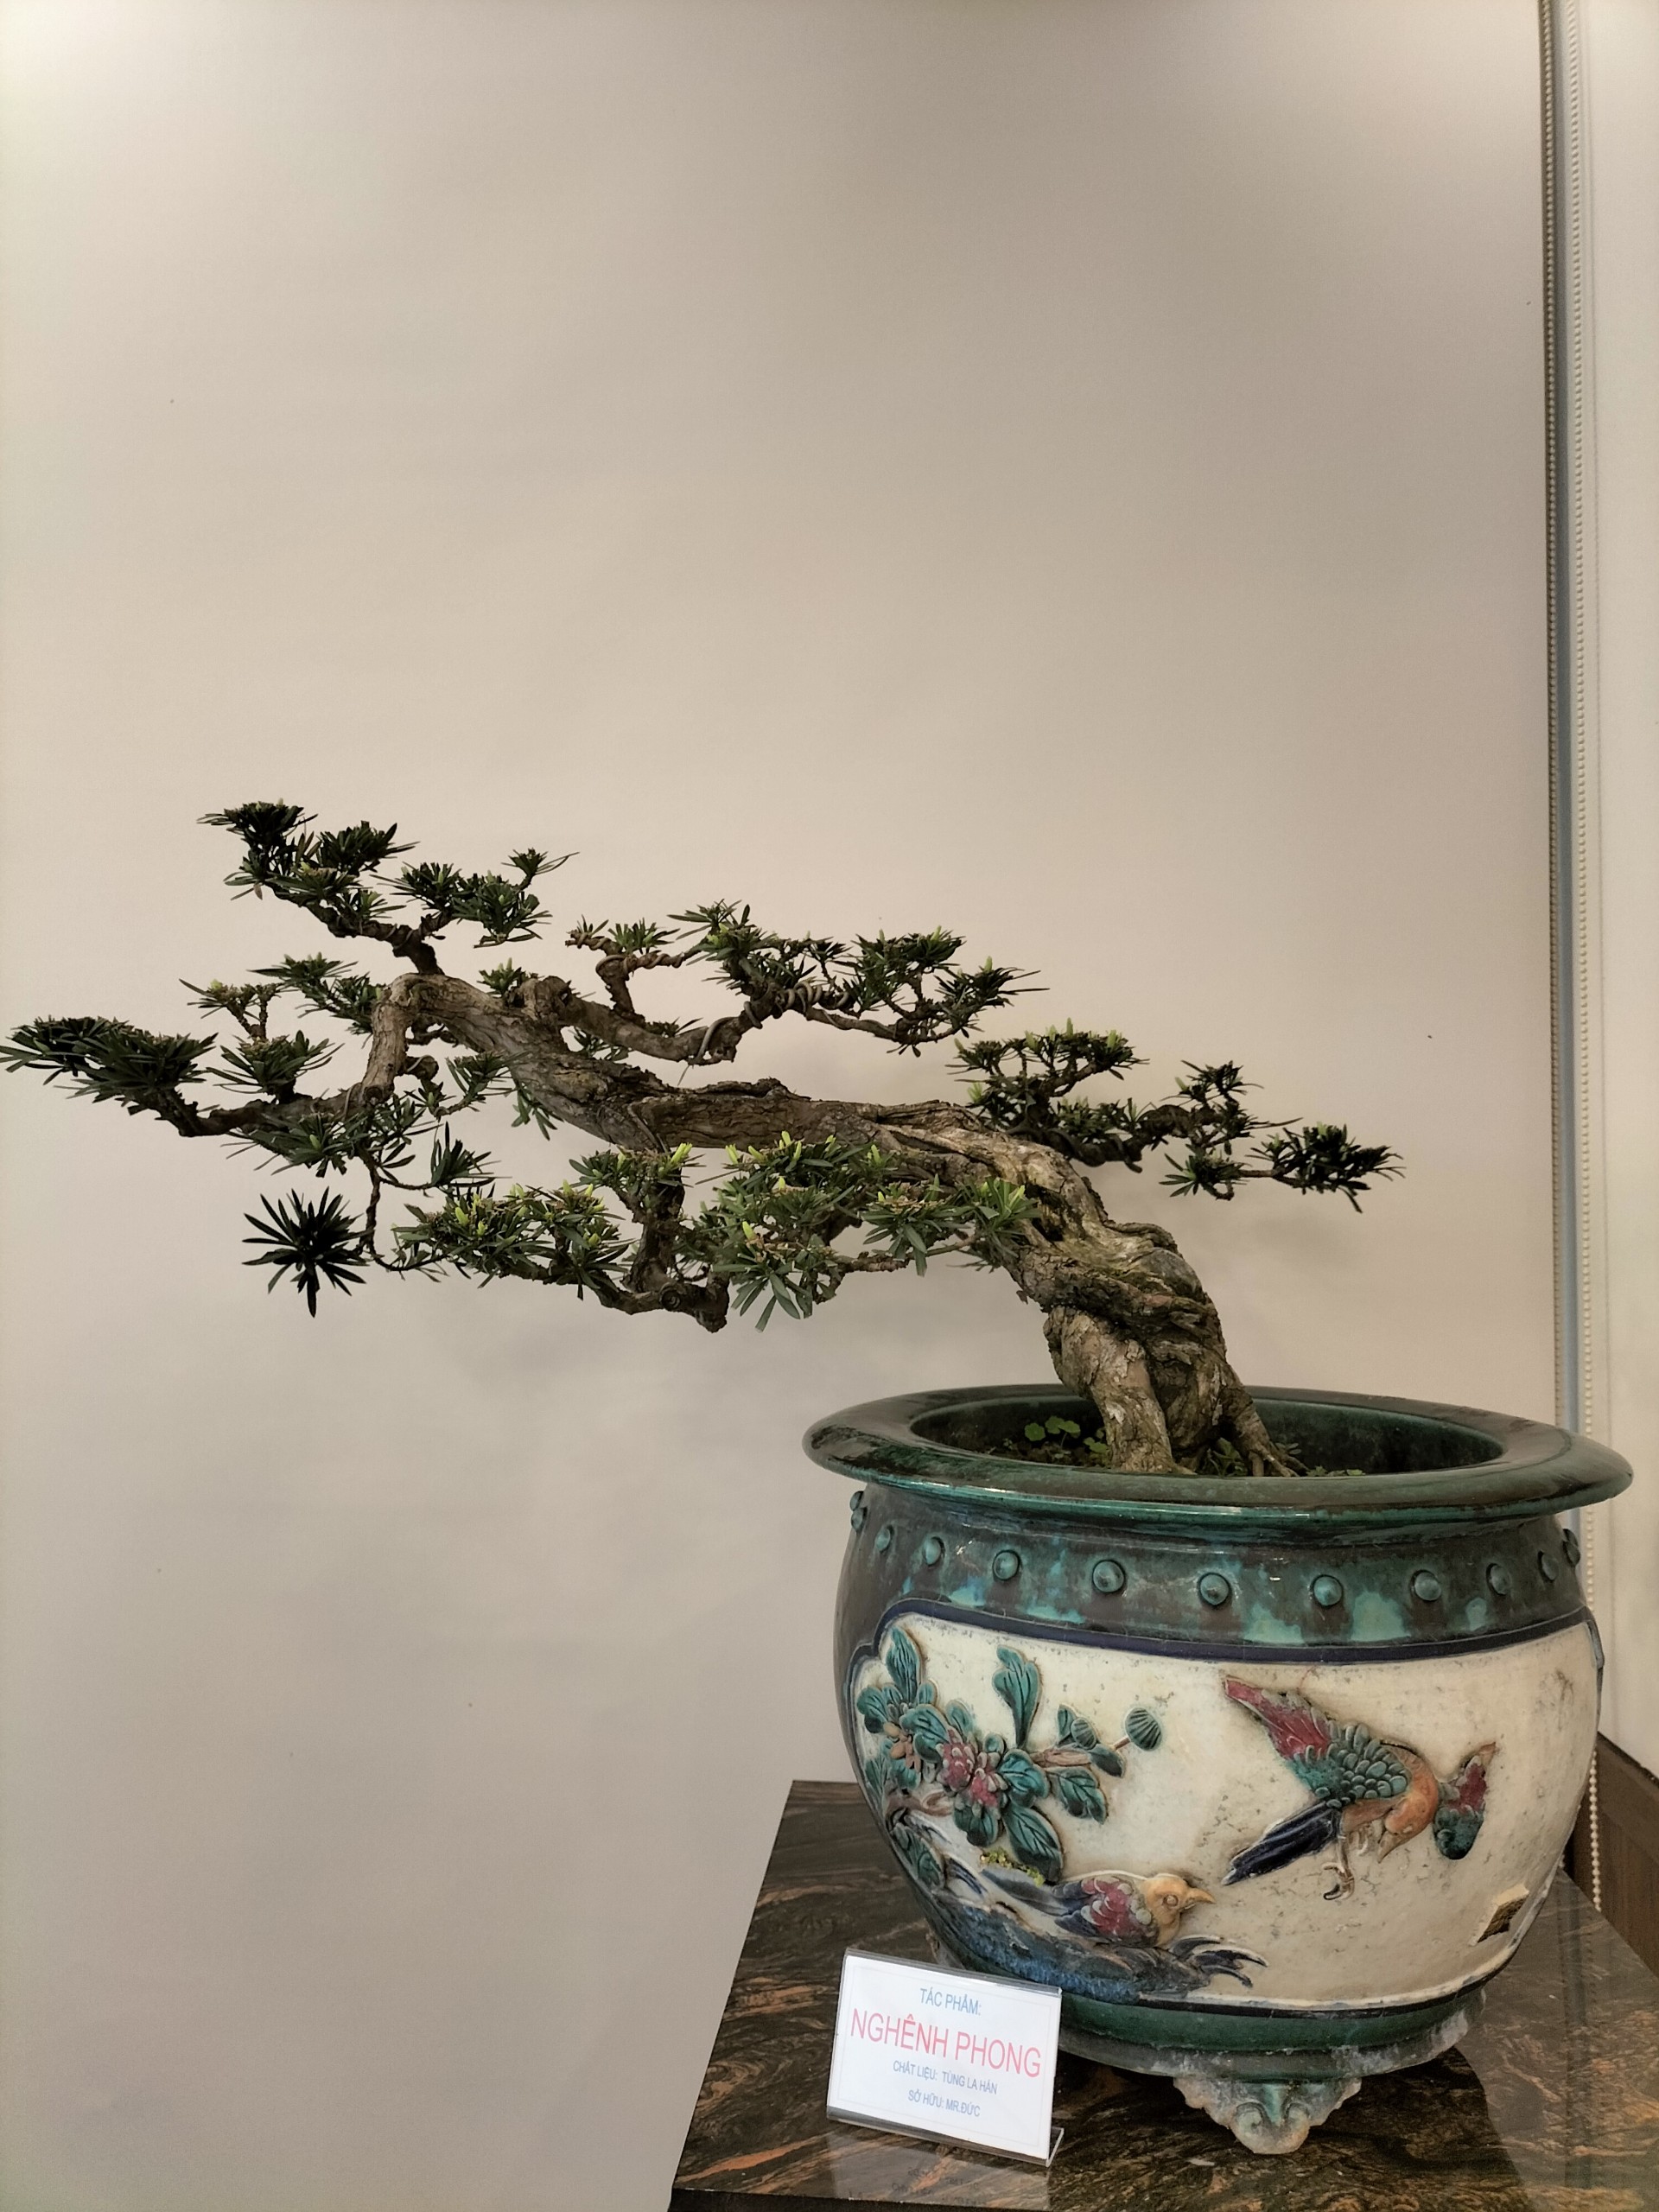 Cực phẩm cây cảnh bonsai hội tụ 4 tiêu chí "Cổ, kỳ, mỹ, văn", hệ chơi cây nức nở "đẹp hết nước chấm" - Ảnh 2.